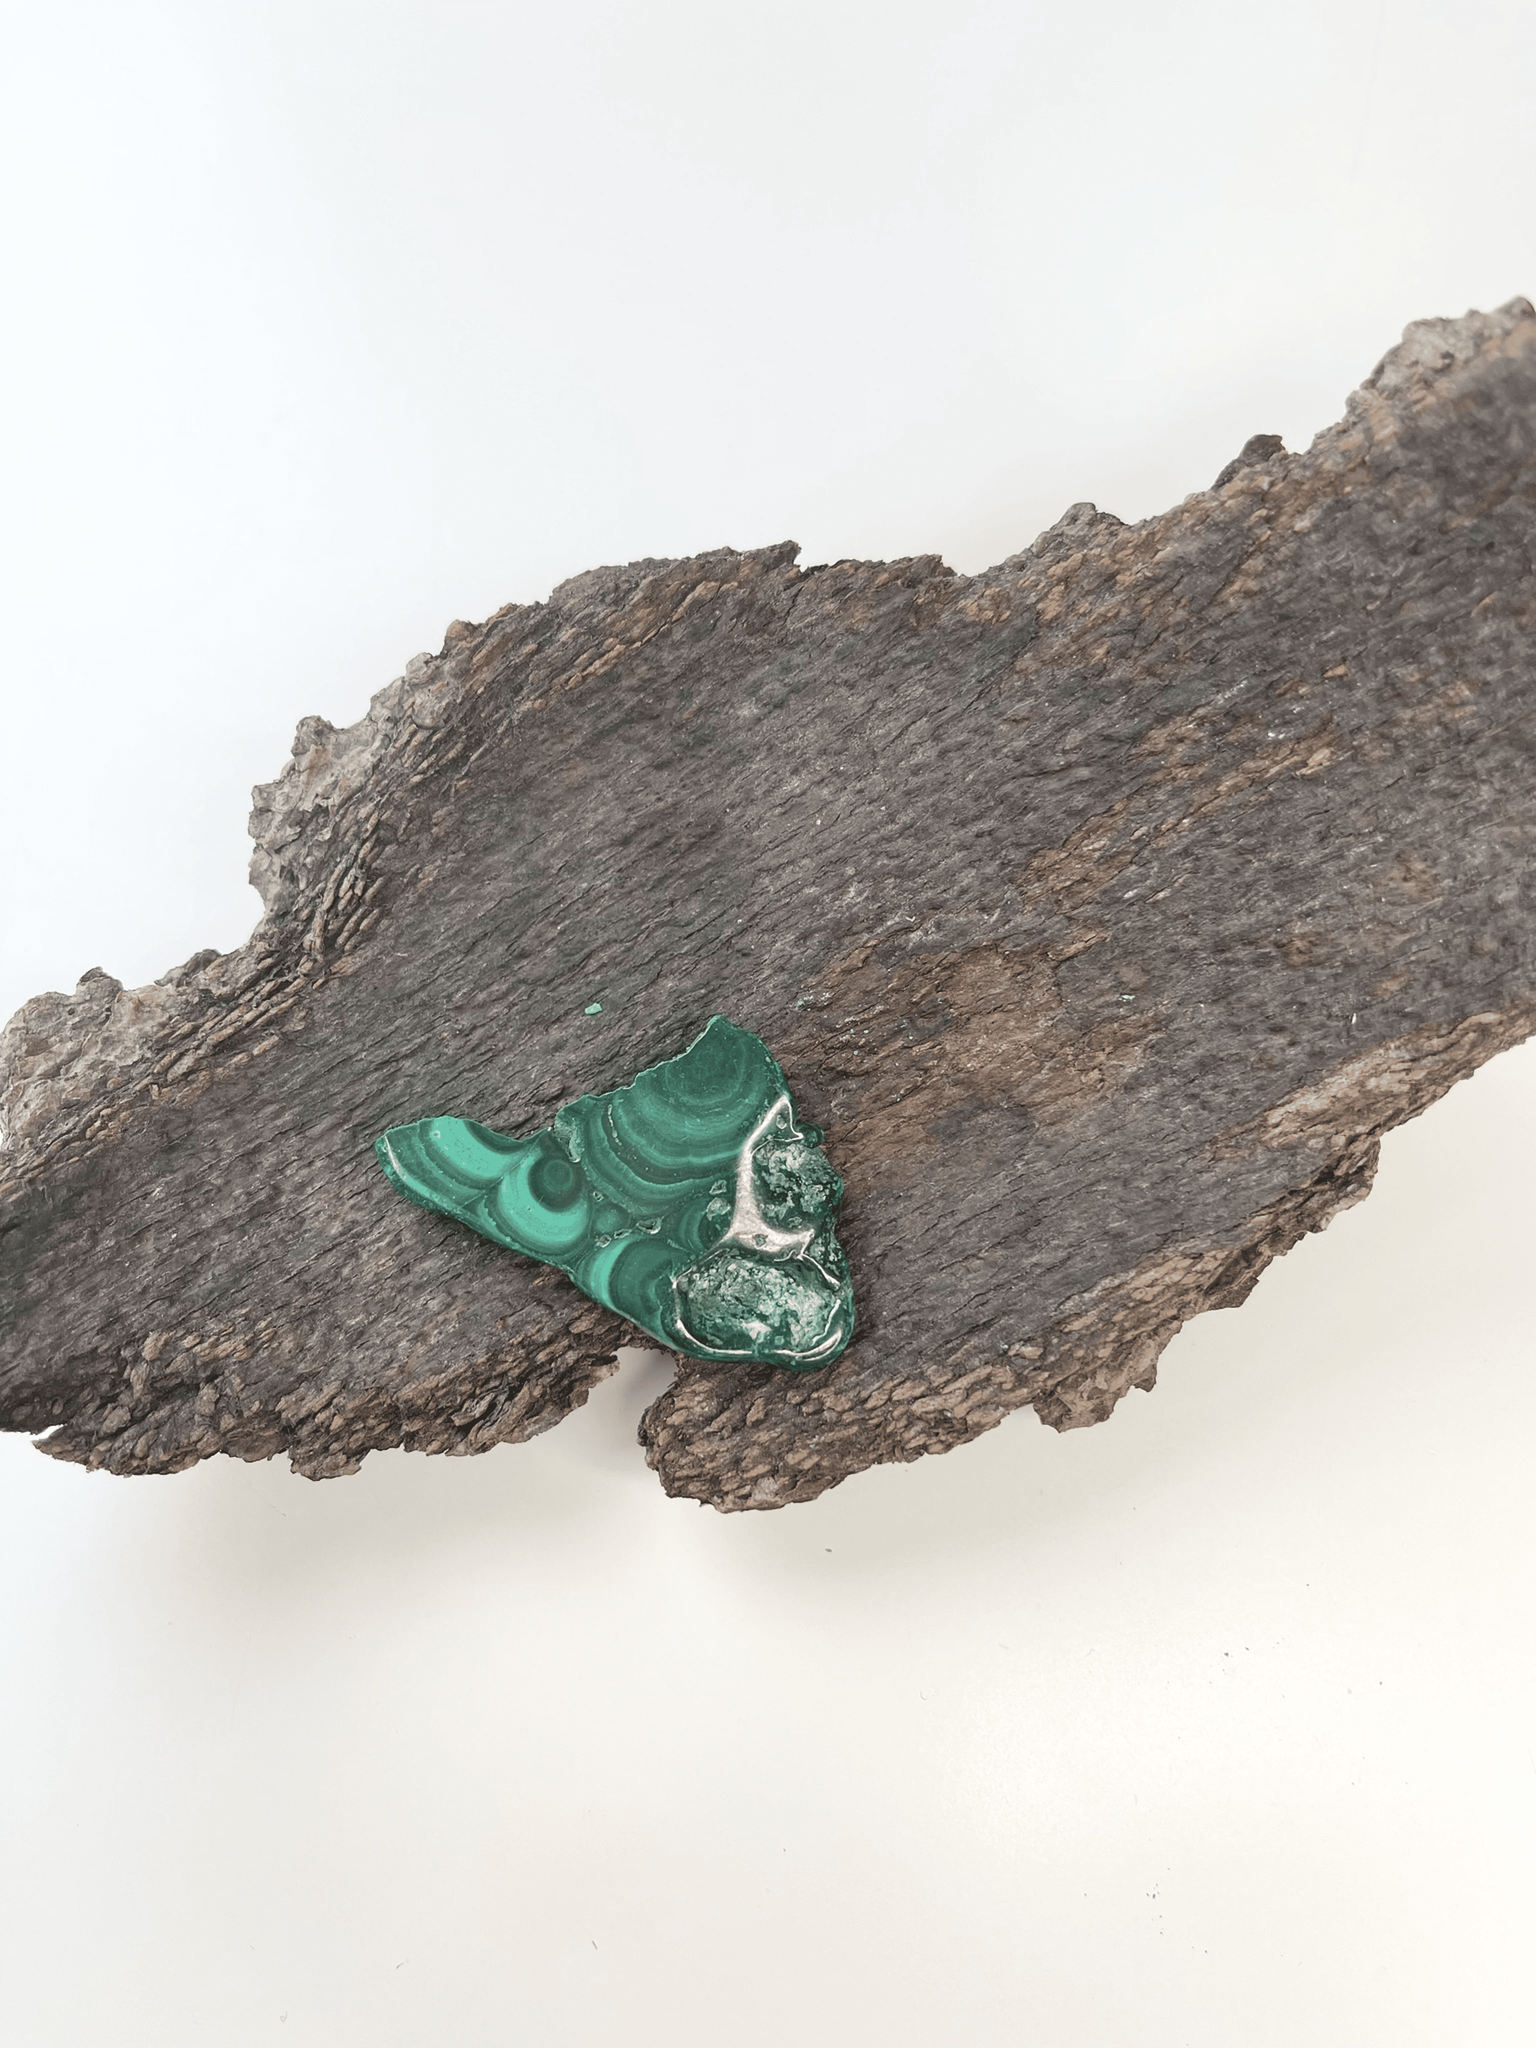 Djupgrön malakit med unika mönster på en ruffig träbit. Malakit, slab #D, är känd för sina spirituella egenskaper.